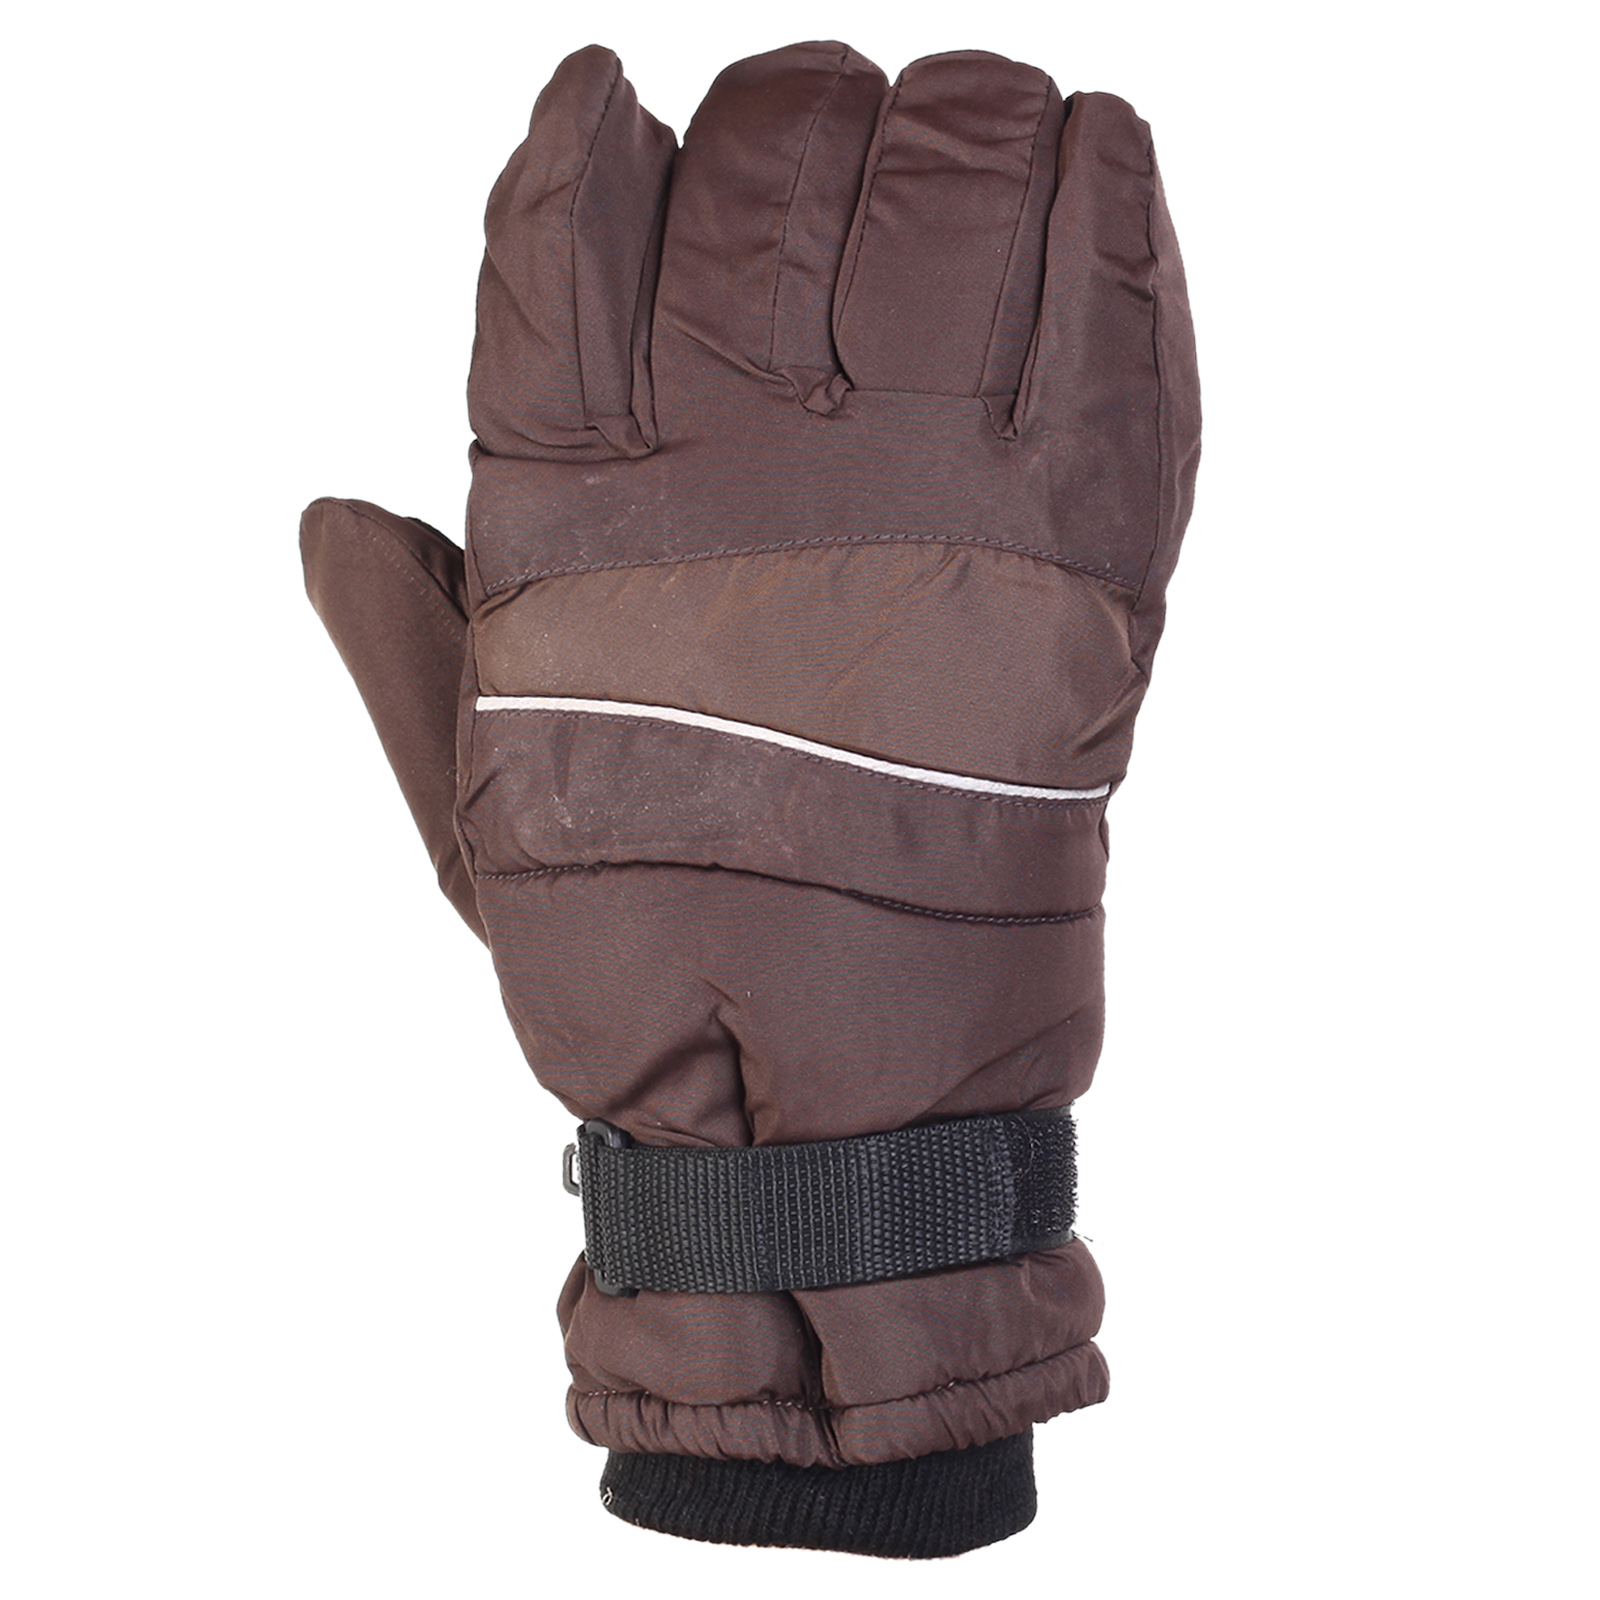 Заказать в интернет магазине мужские перчатки на зиму